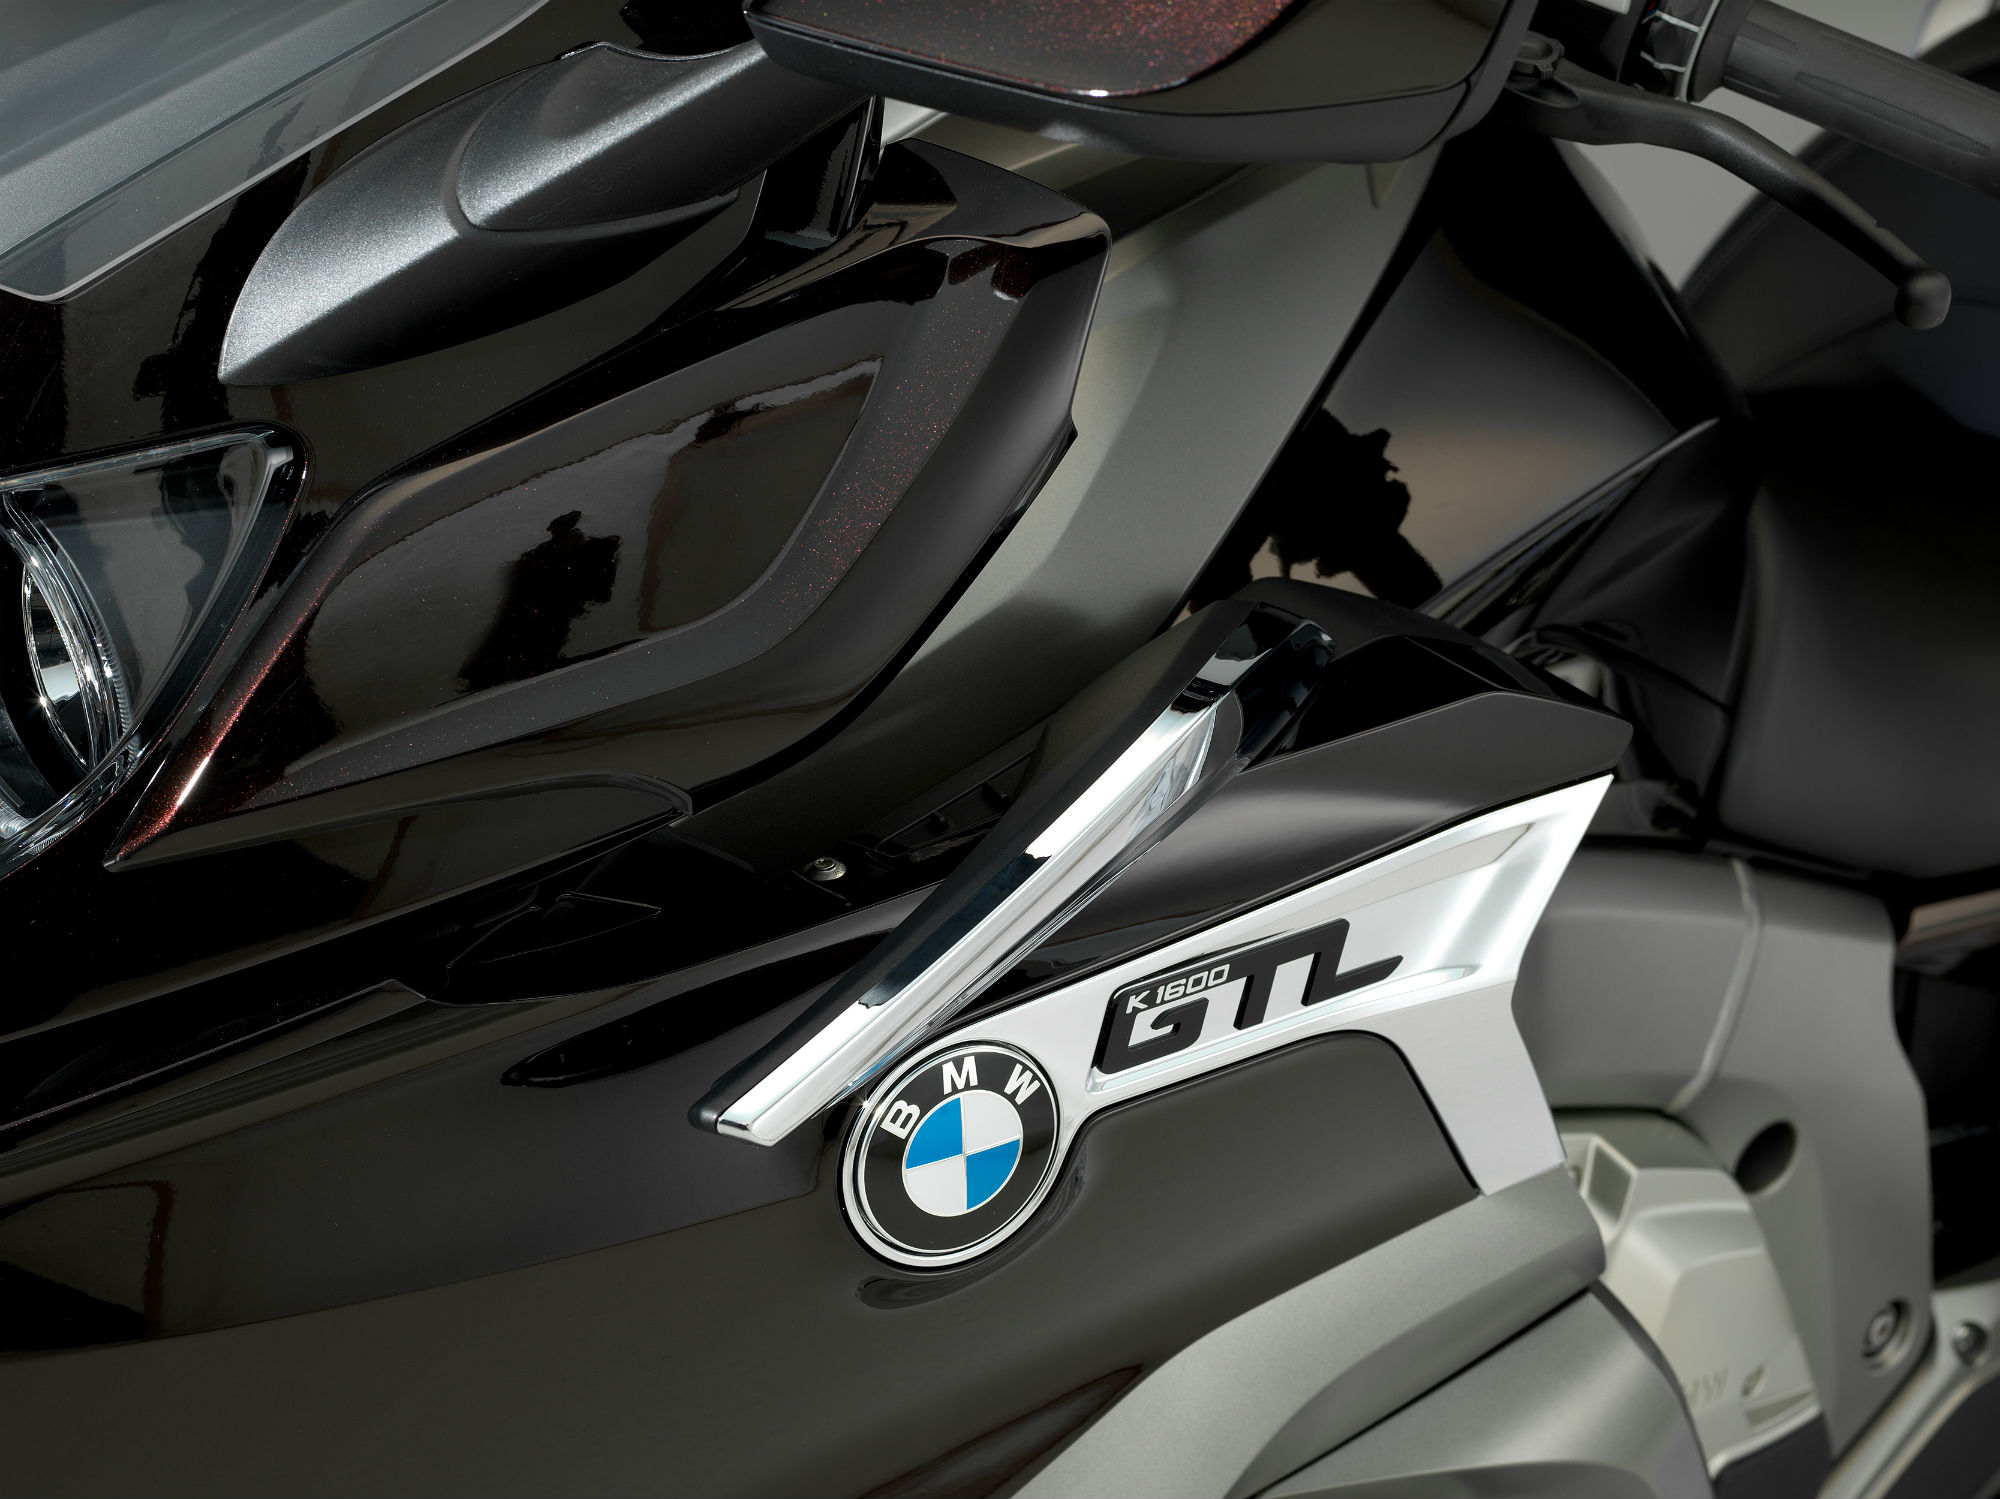 Updated BMW K1600 GTL